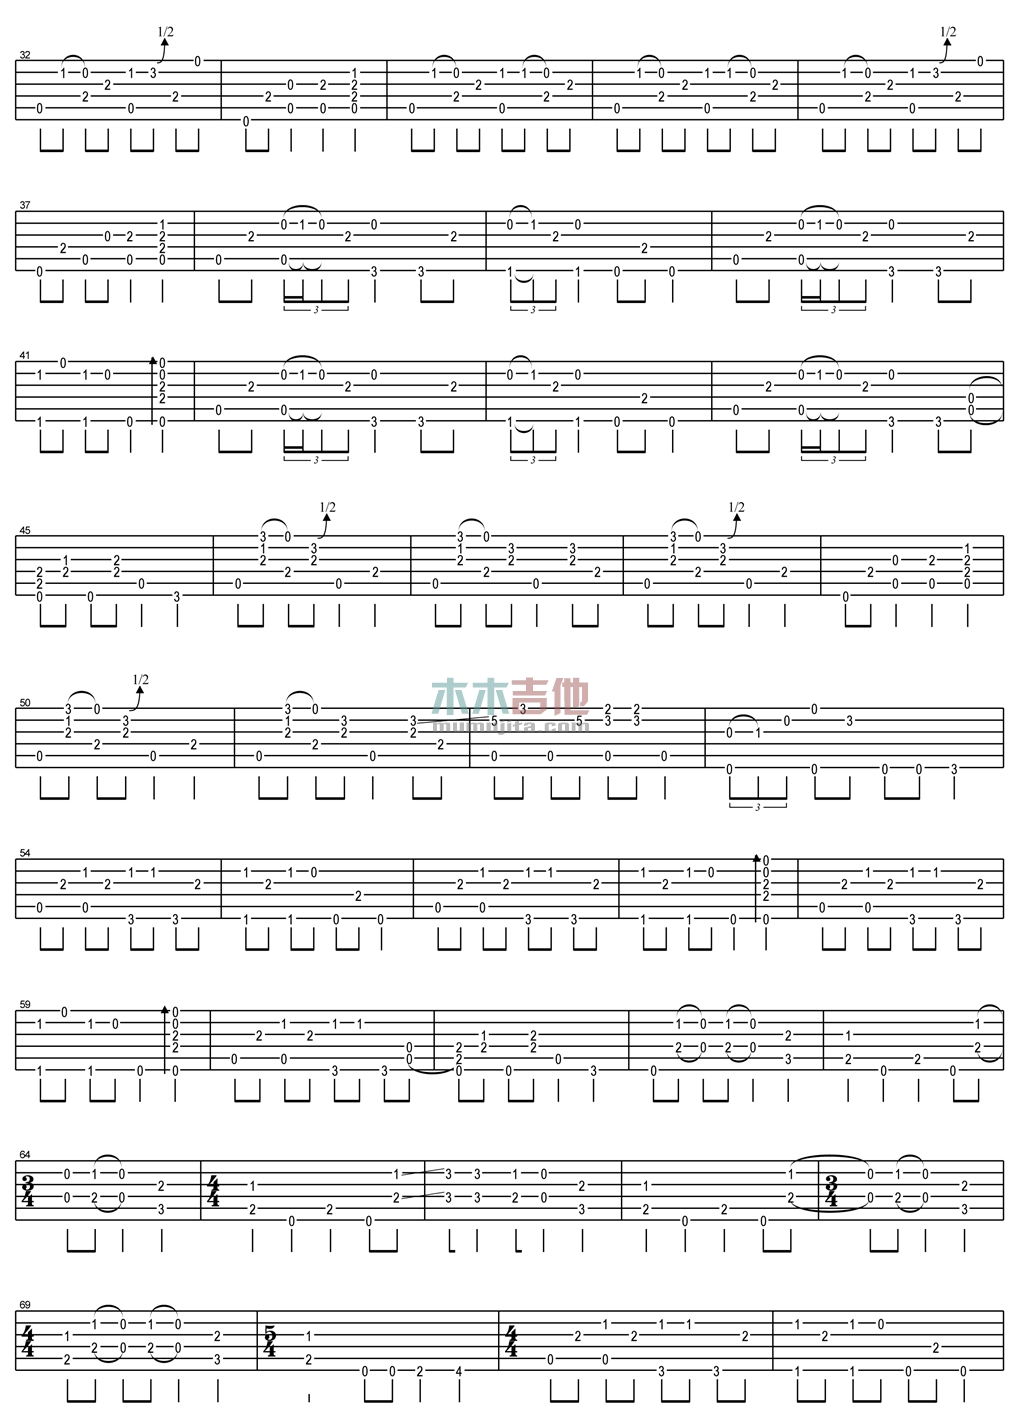 郑成河《Anji 指弹 》吉他谱-Guitar Music Score